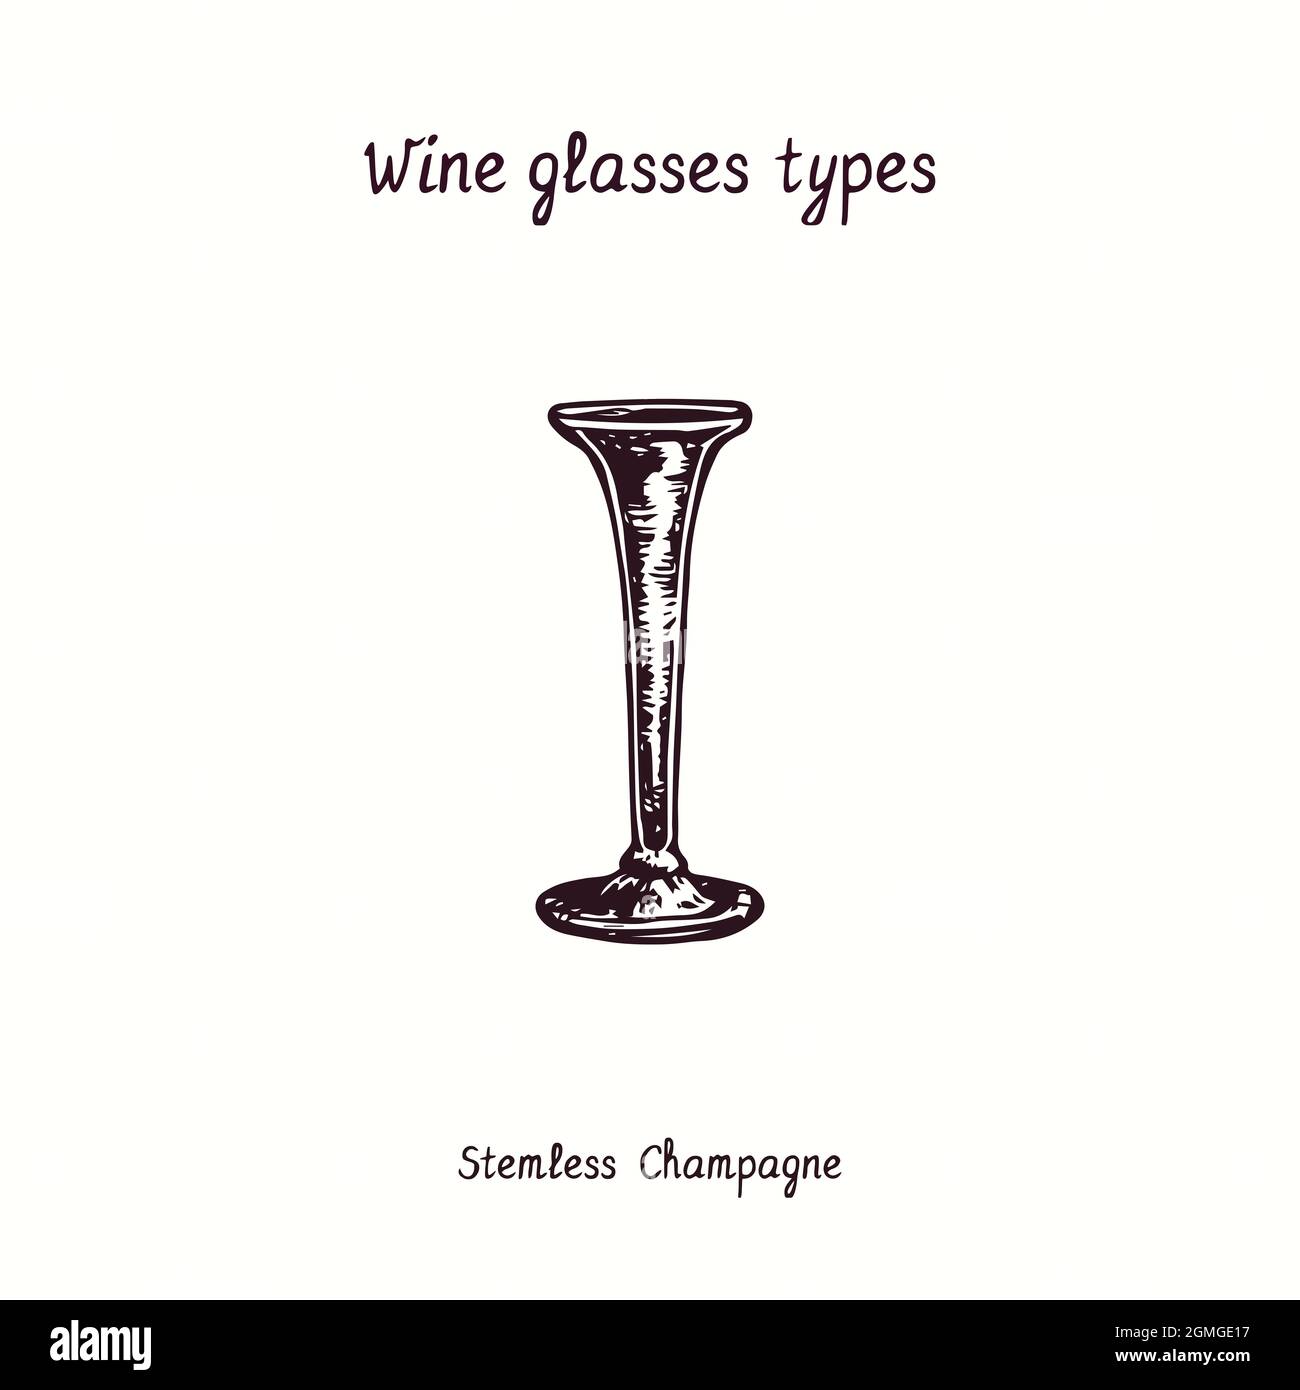 Weingläser Typen Kollektion, stemless Champagne. Tusche schwarz-weiße Doodle Zeichnung im Holzschnitt-Stil. Stockfoto